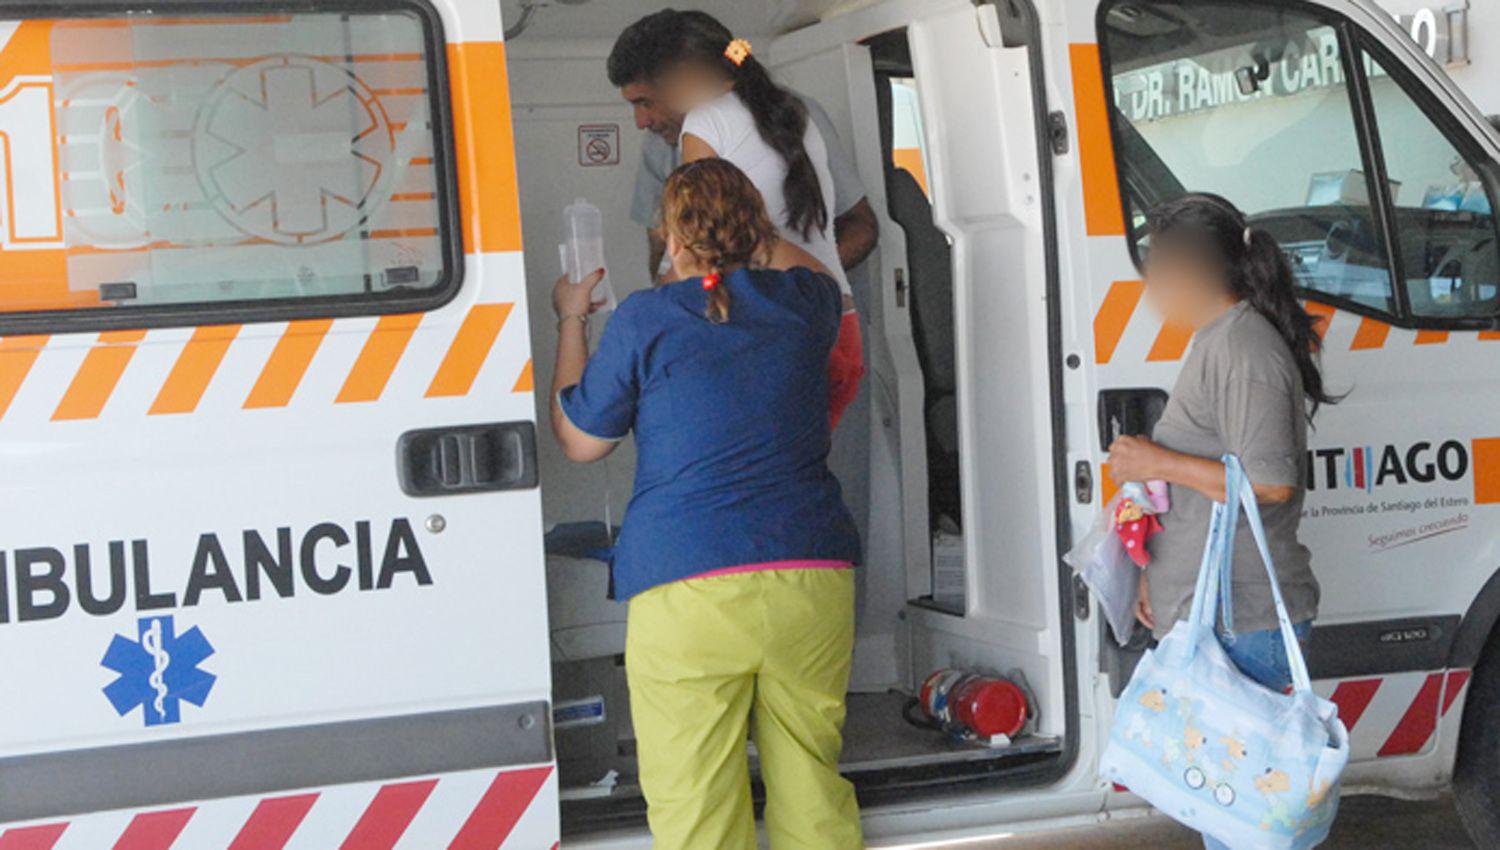 La paciente fue asistida en el Hospital Zonal de Añatuya
Presentaba golpes nuevos y viejos